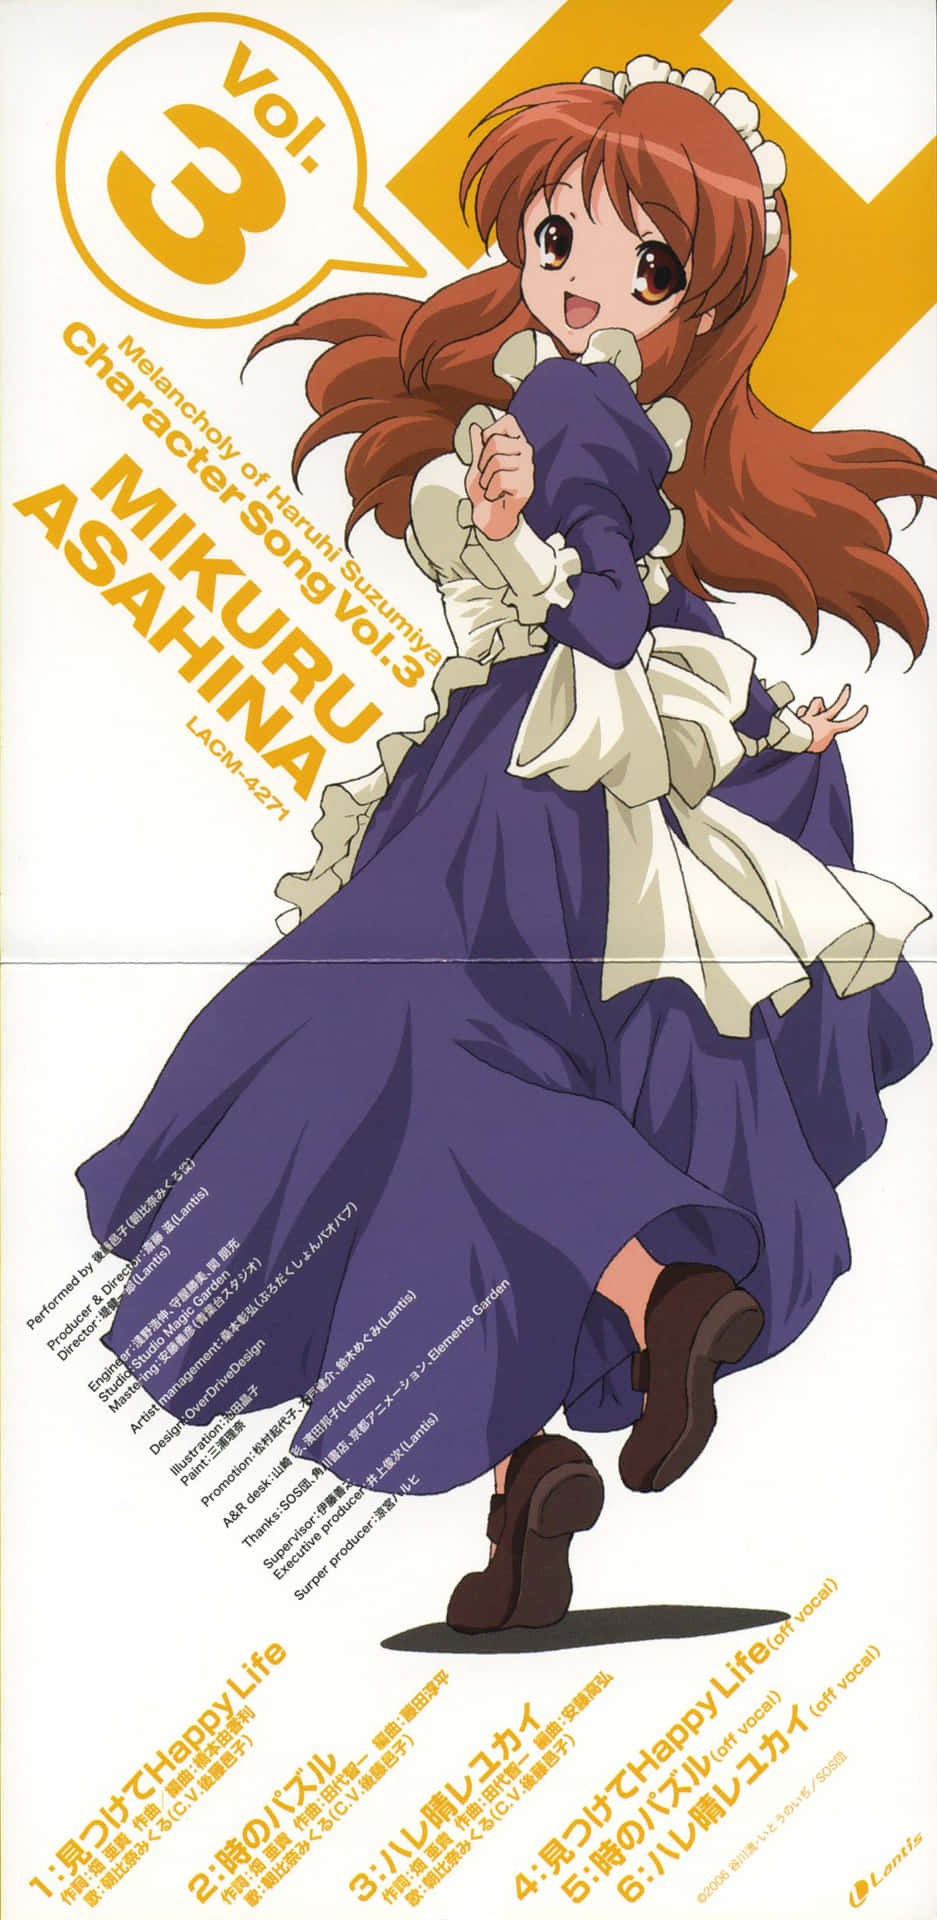 Personajede Anime Mikuru Asahina Posando Con Un Elegante Vestido Fondo de pantalla